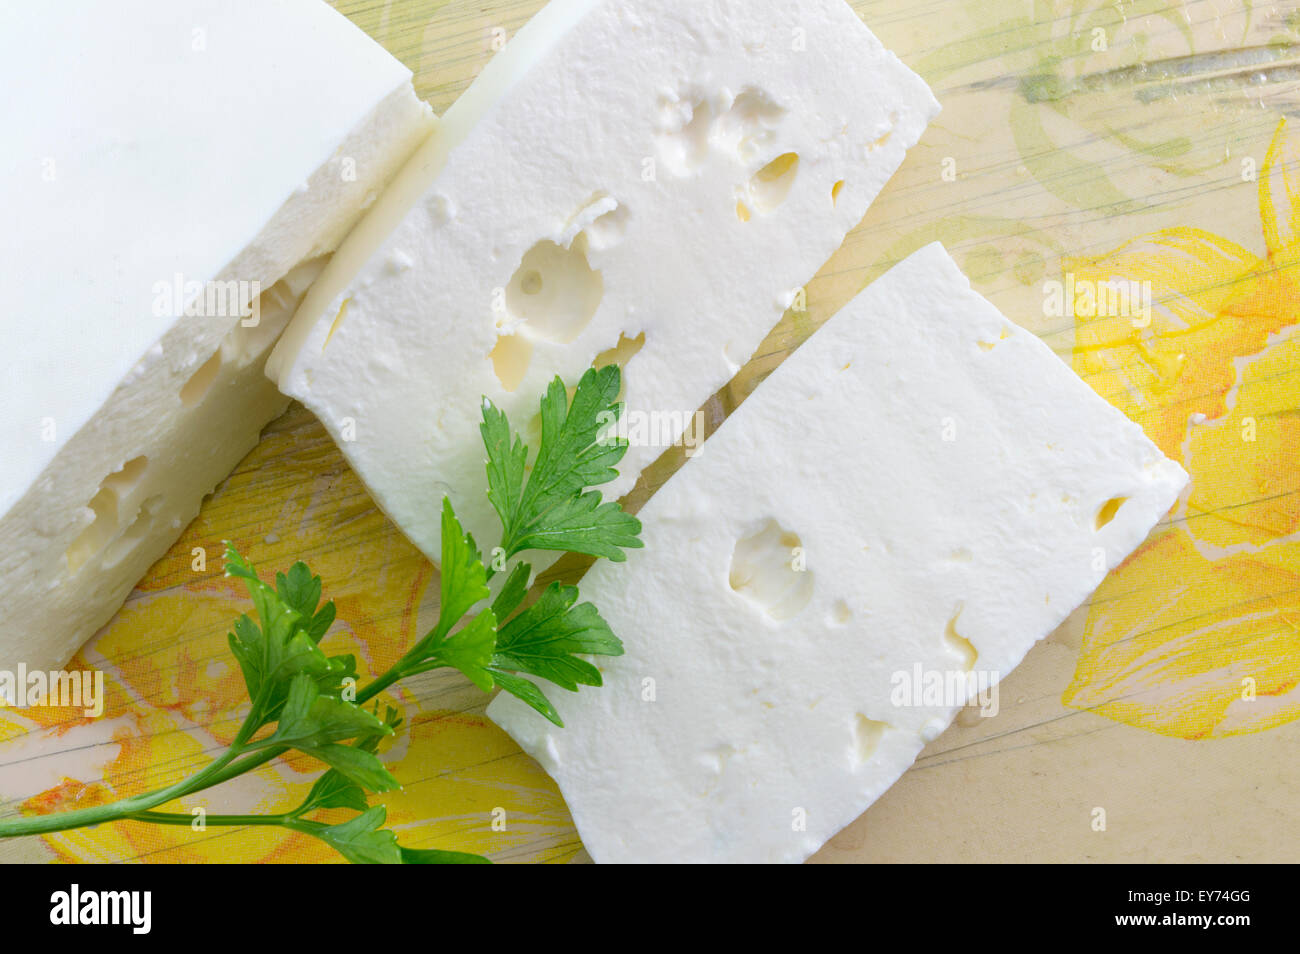 Des tranches de fromage blanc et de persil sur une table décorée de découpage Banque D'Images